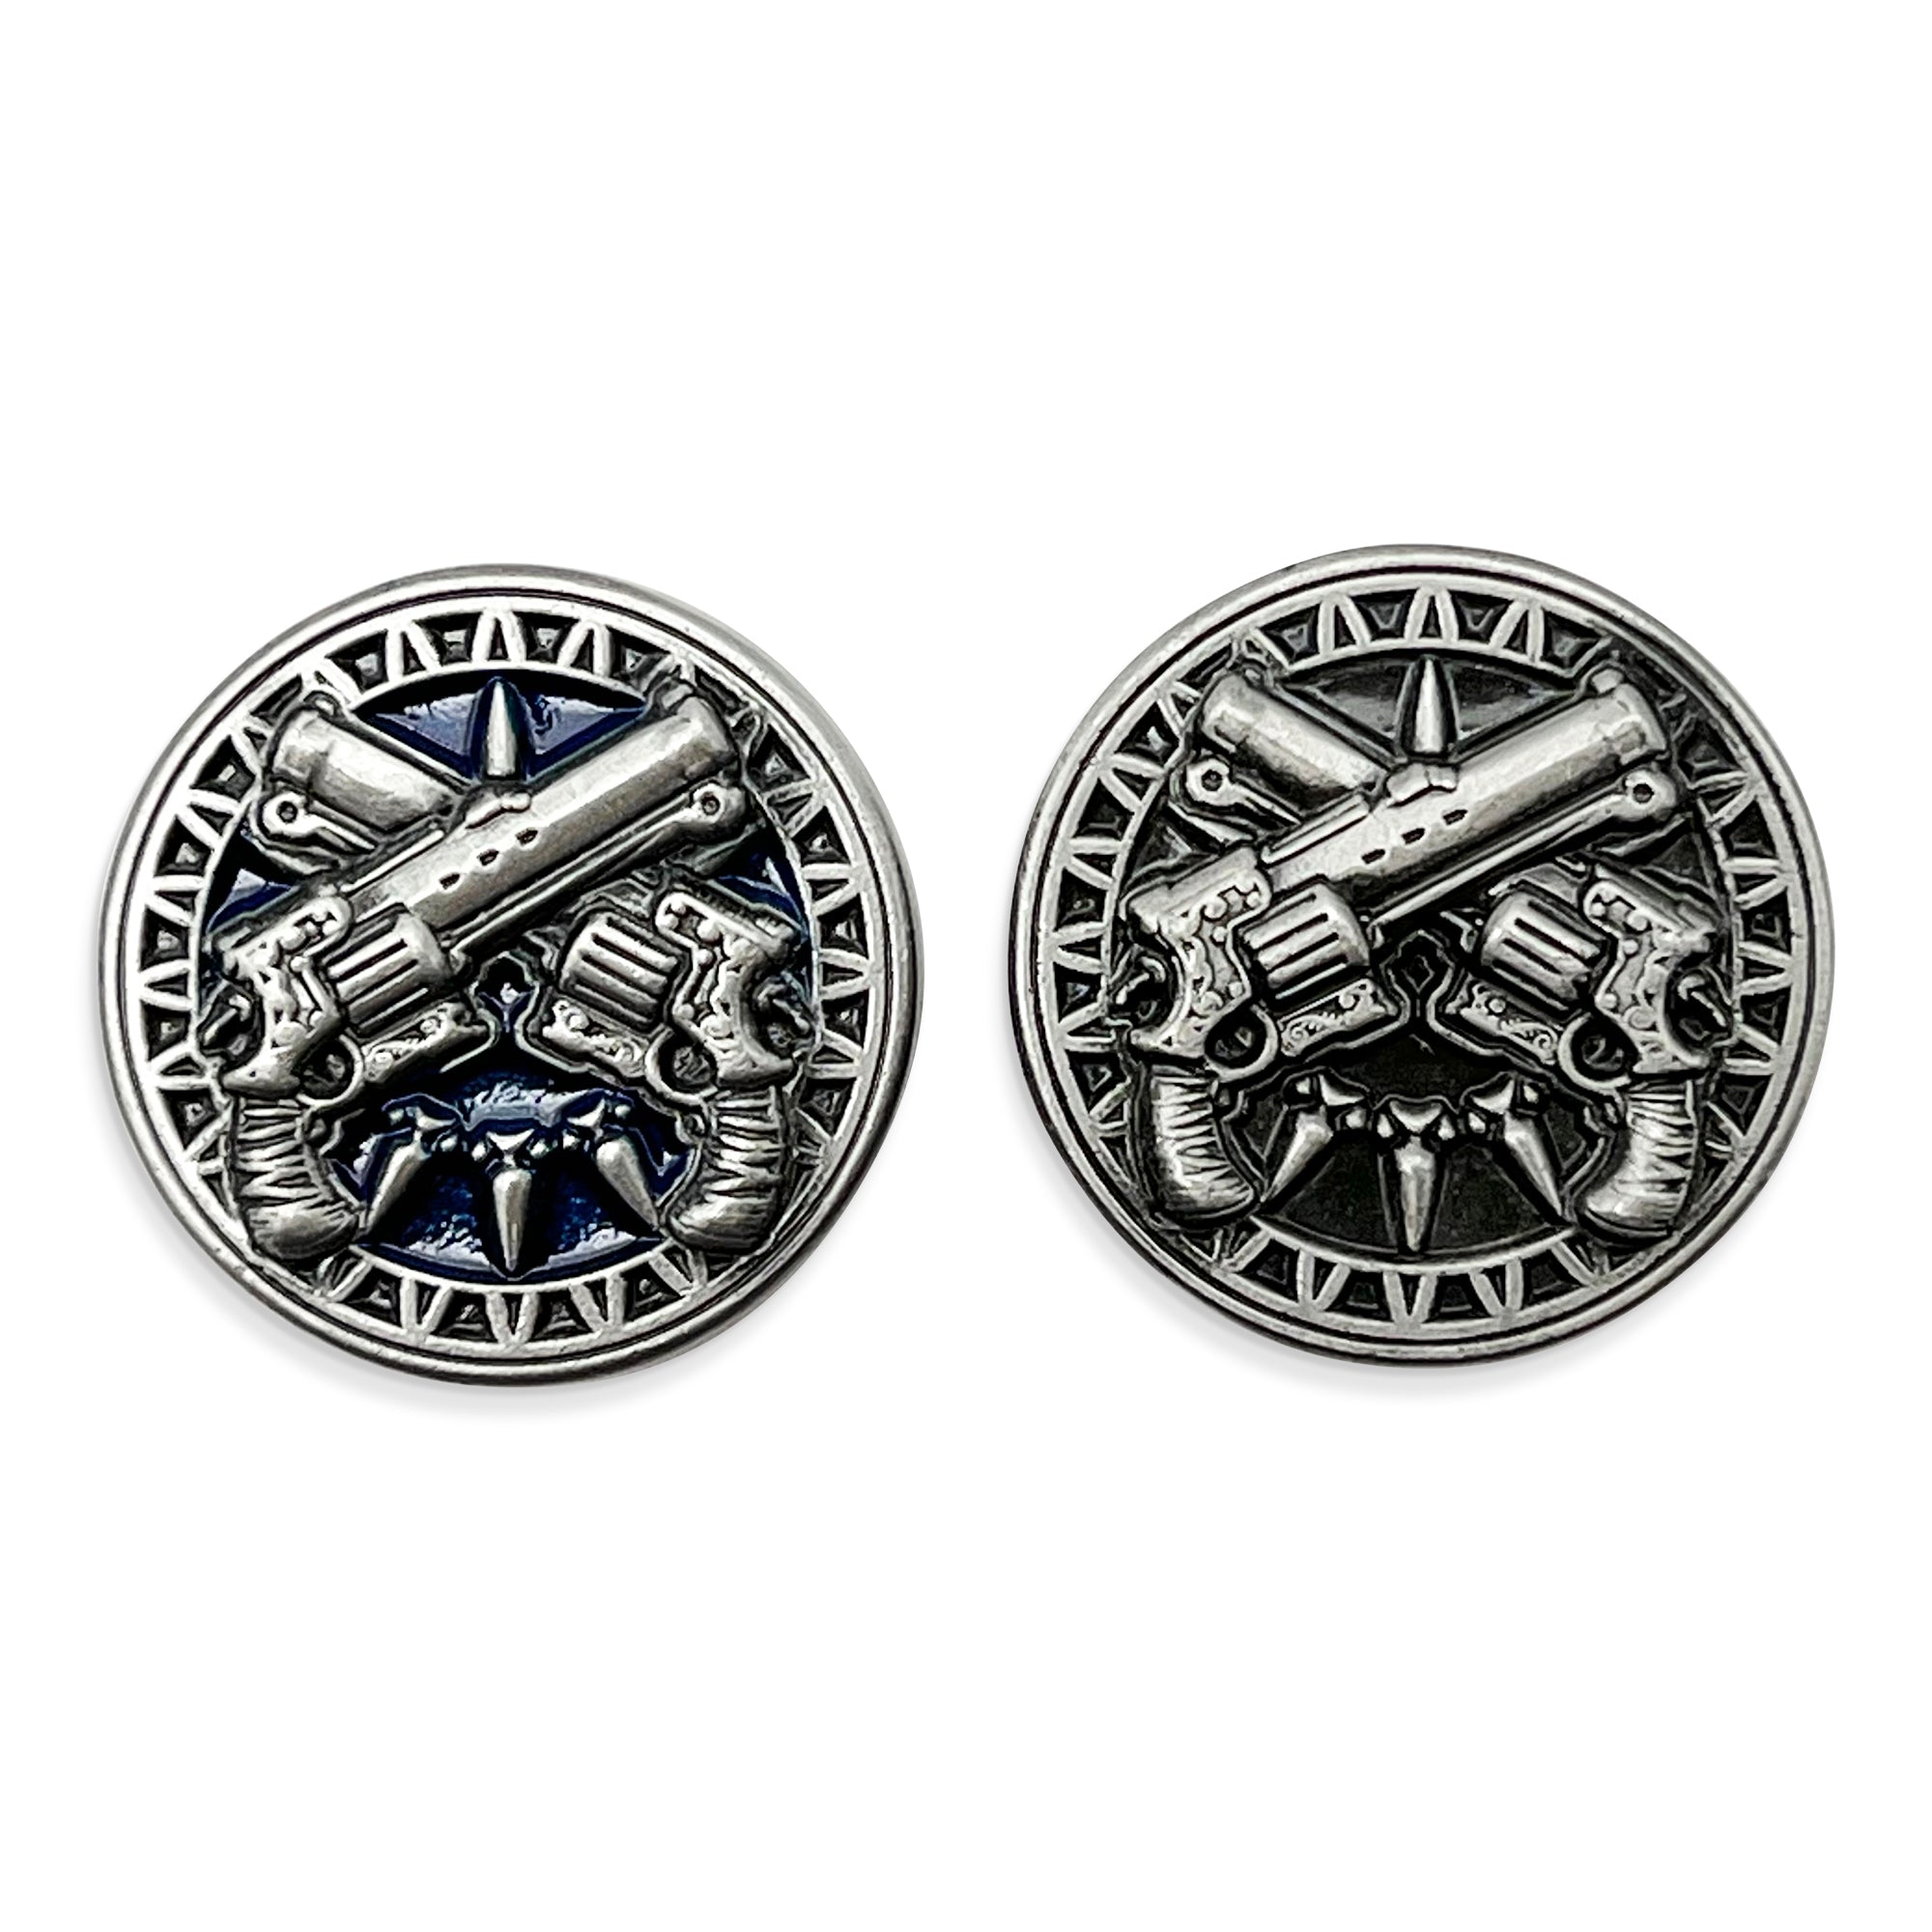 Profession Coins - Gunslinger Metal Coins Set of 10 - NOR 03456